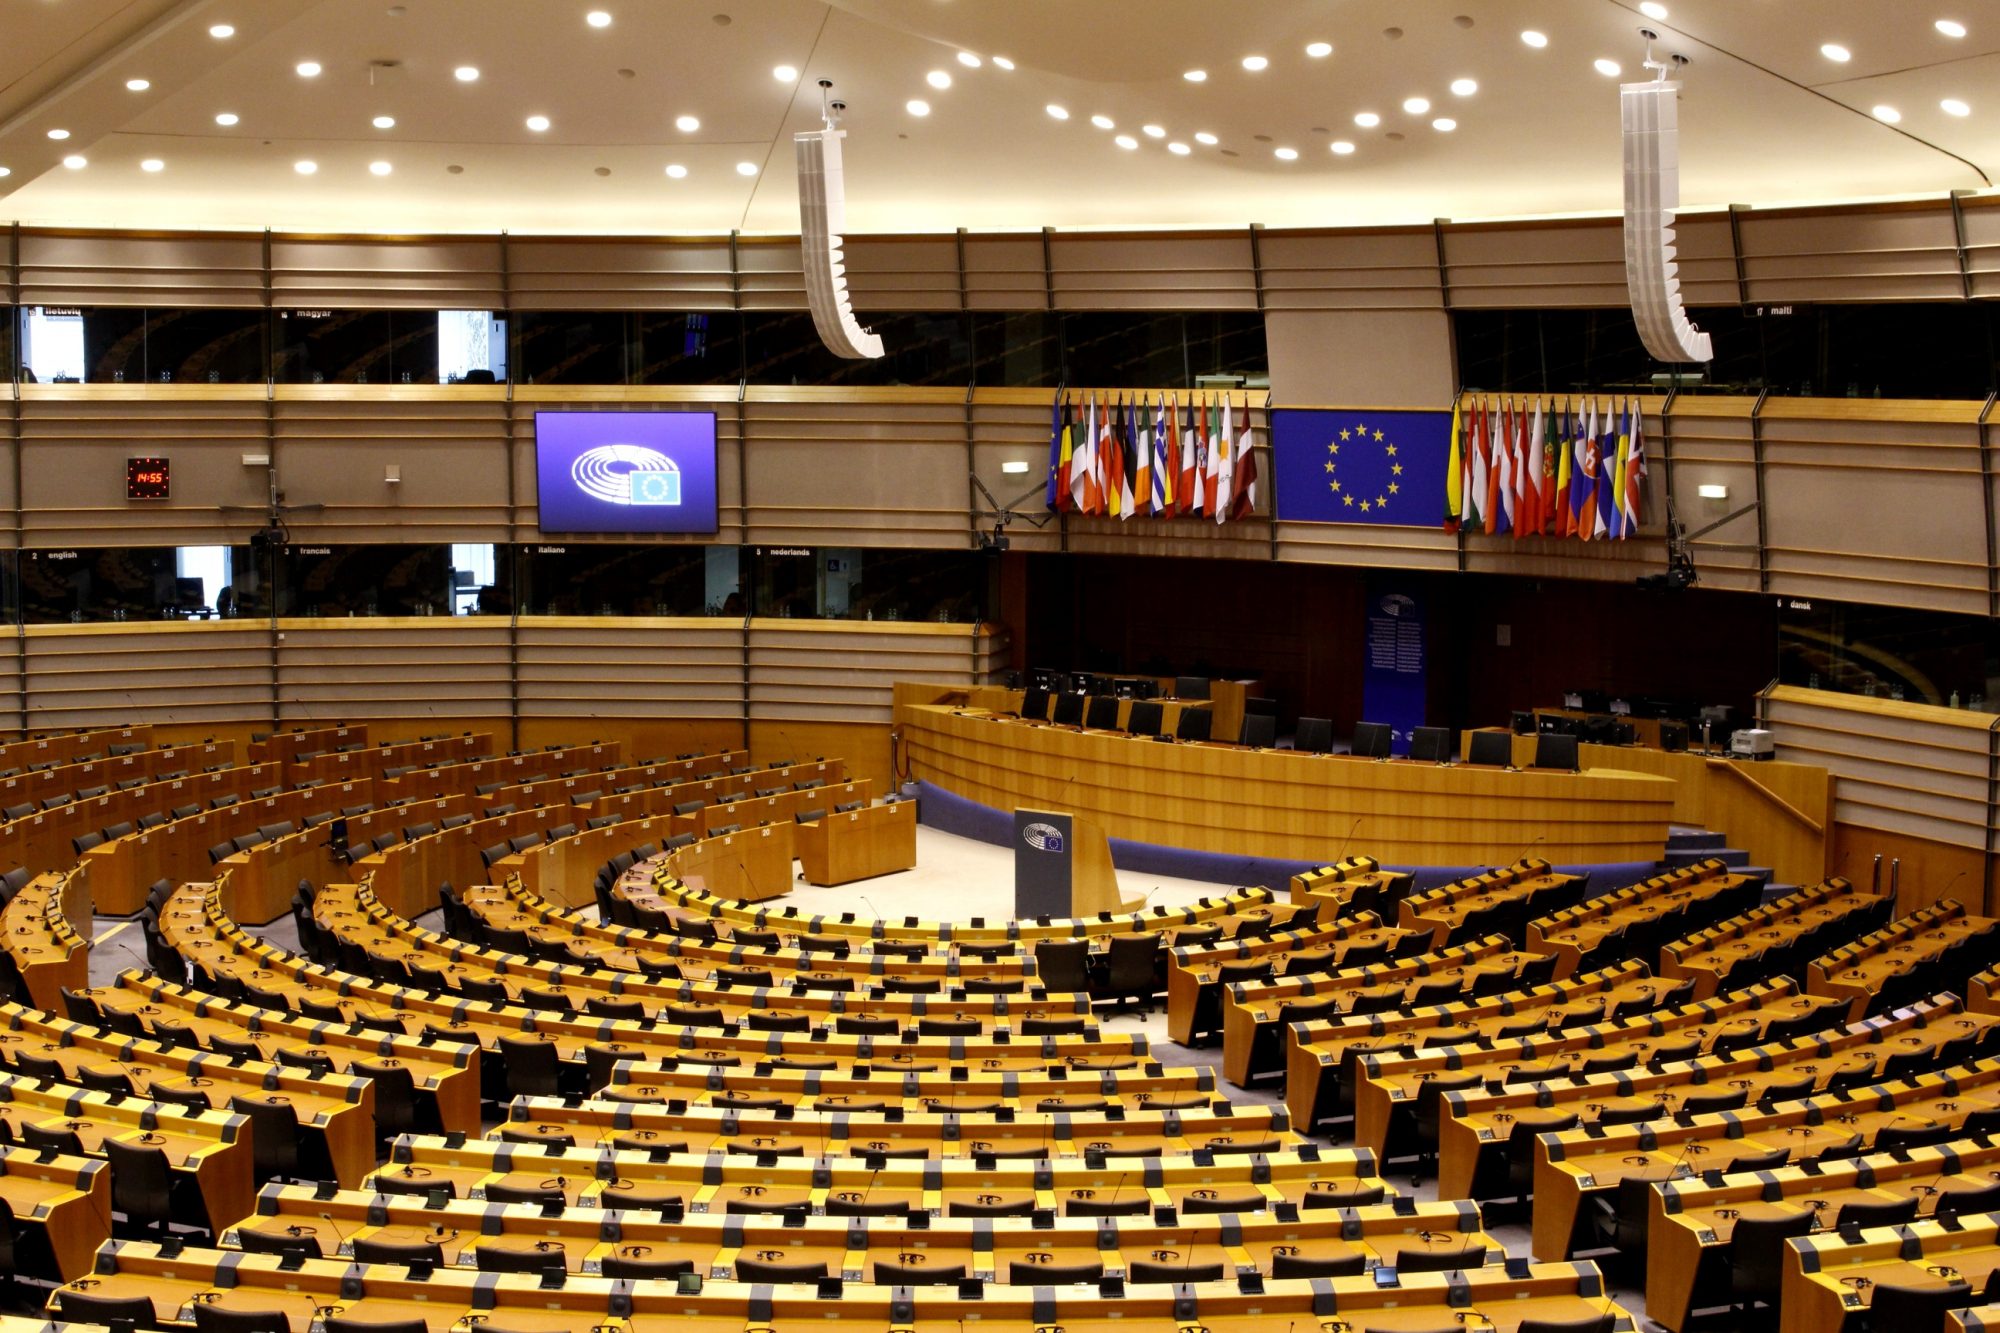 Parlamento europeo donde esta